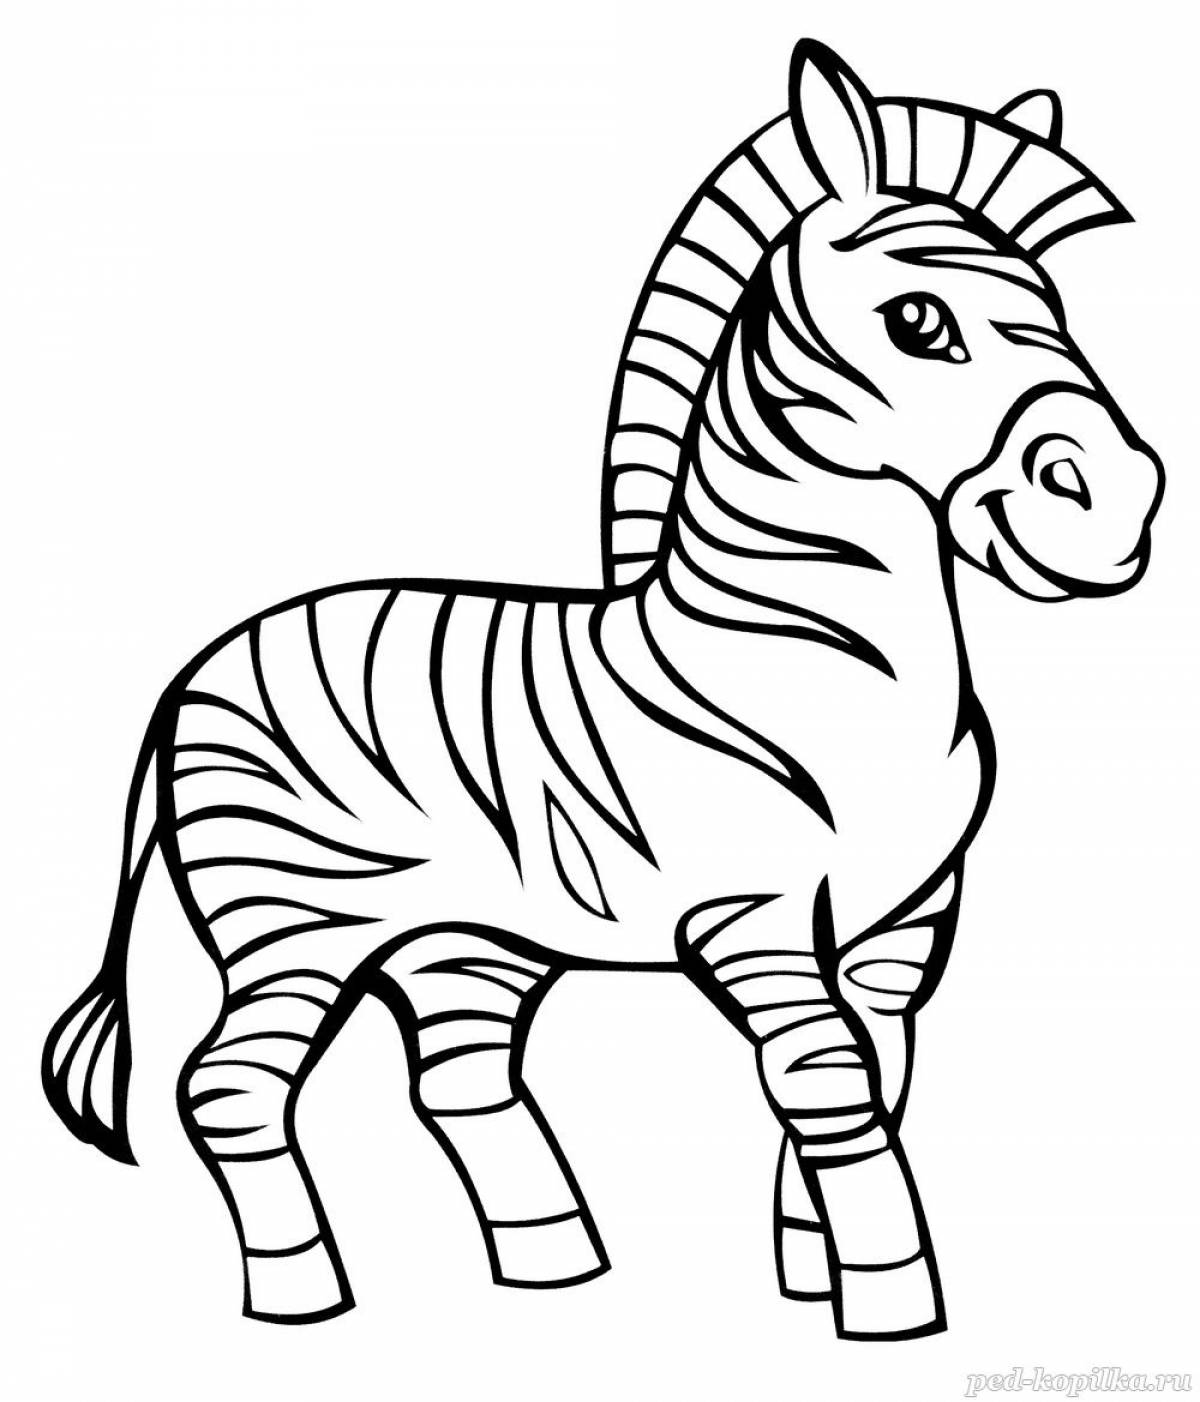 Удивительная раскраска зебра для дошкольников 3-4 лет